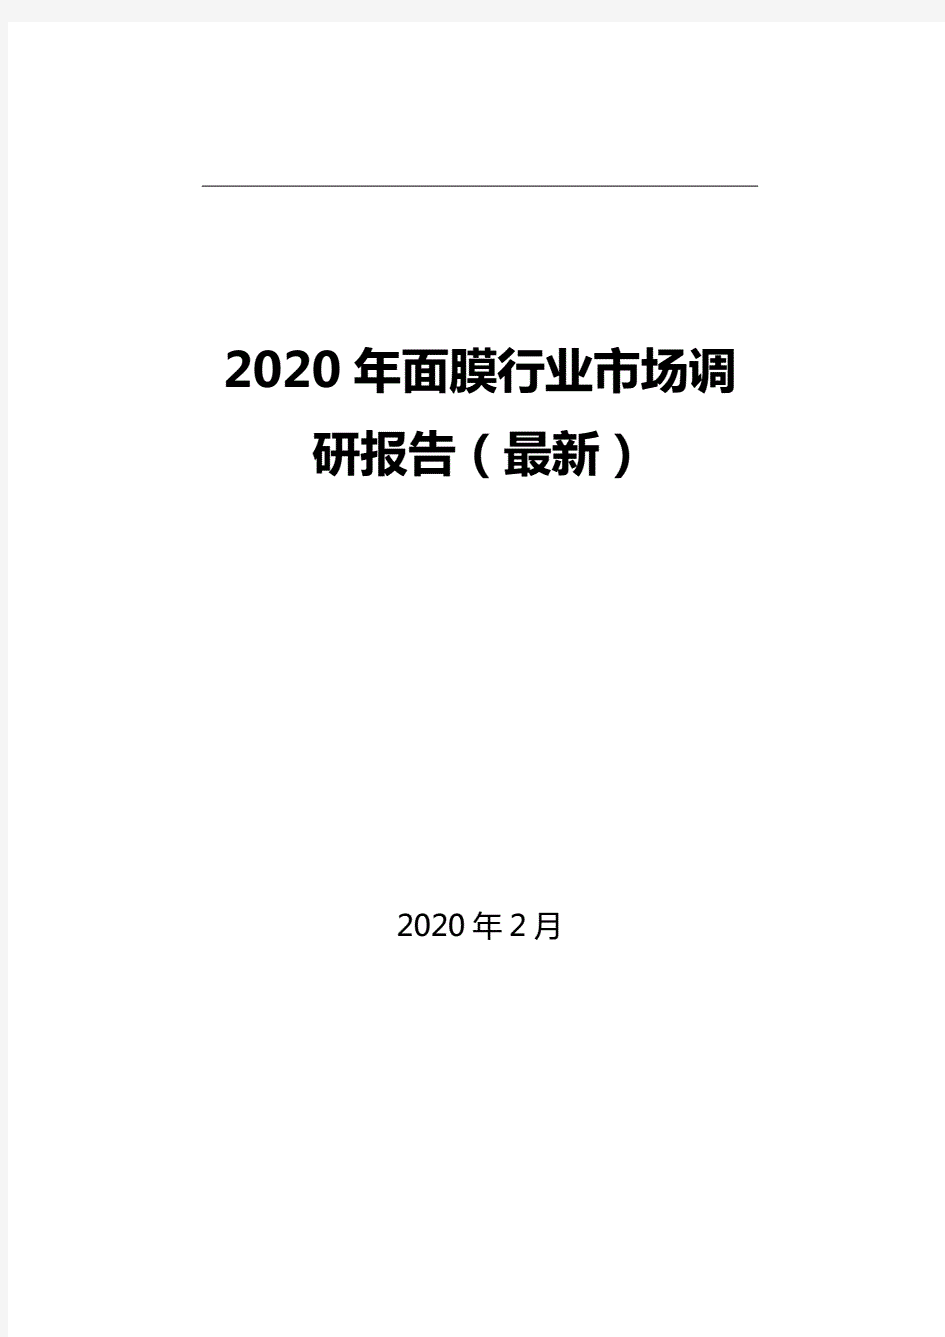 2020年面膜行业市场调研报告(最新)